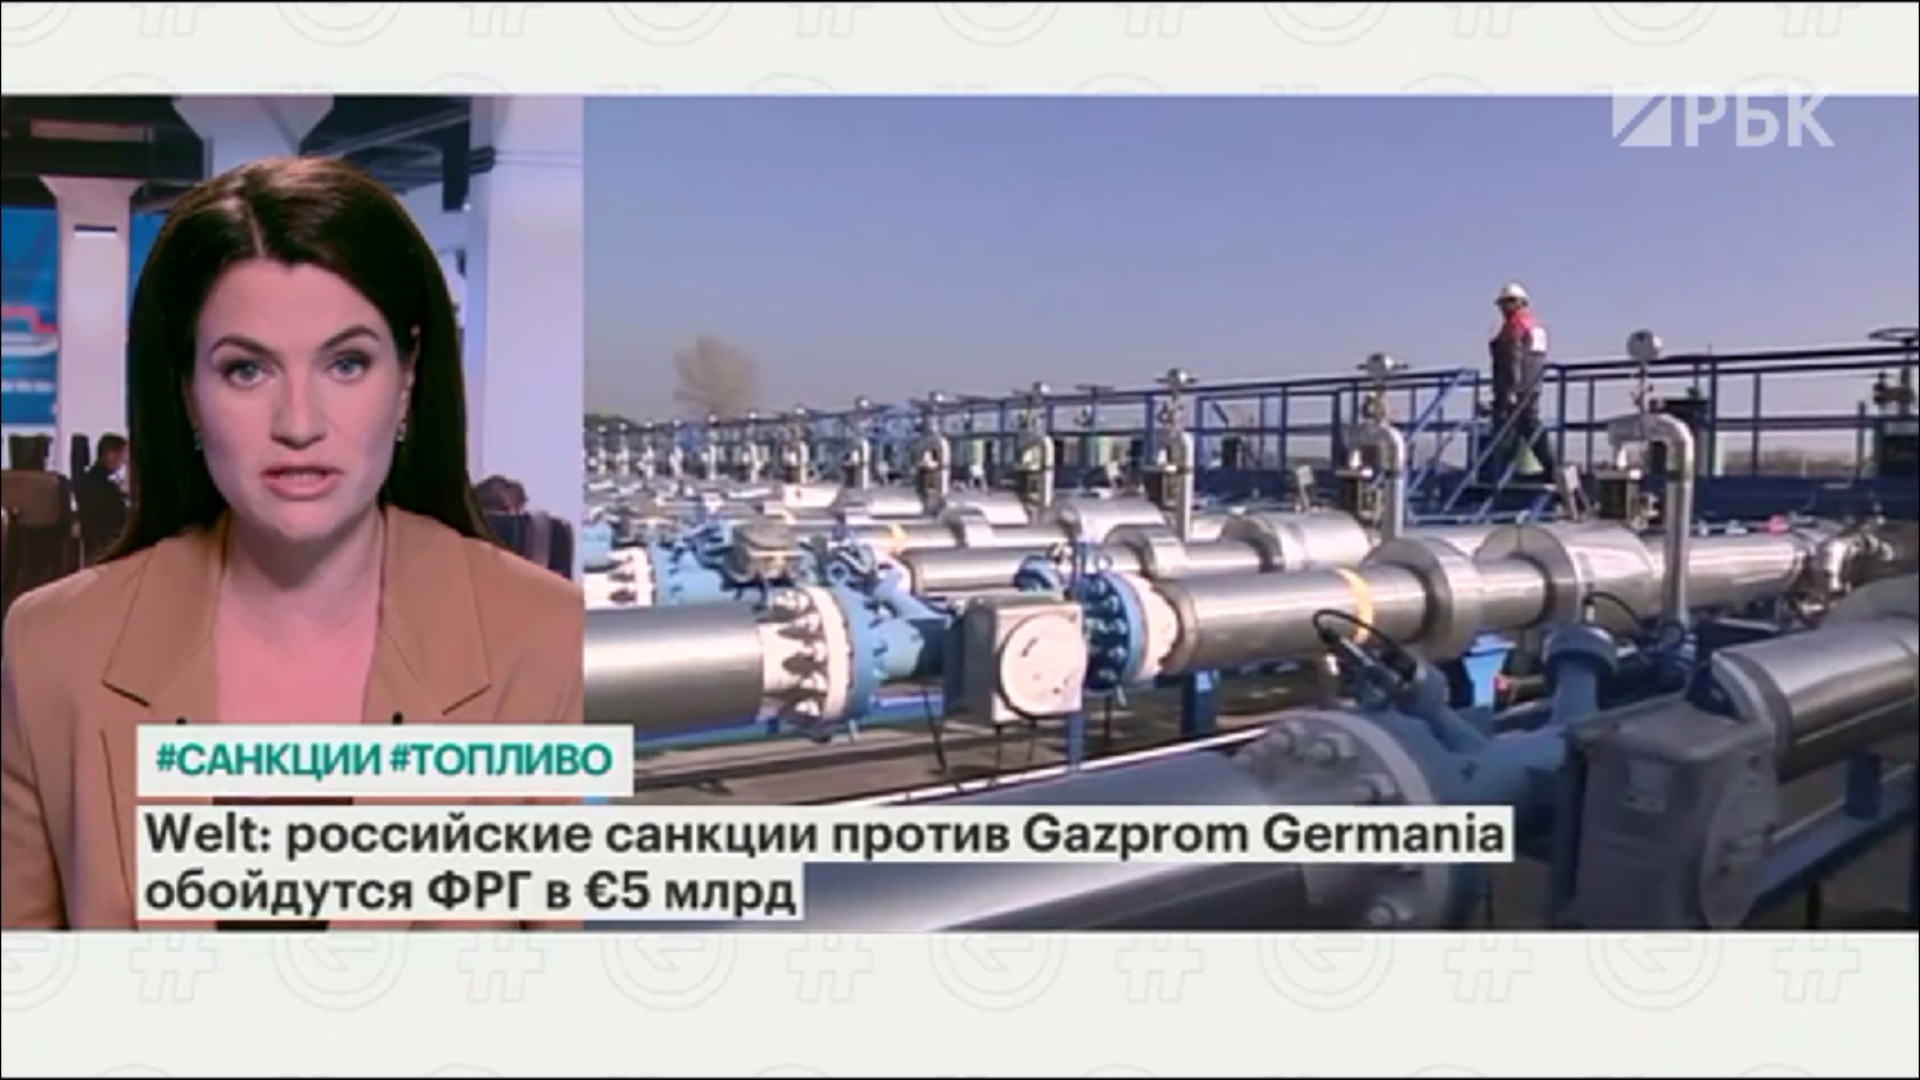 Welt узнала, что санкции против Gazprom Germania обойдутся ФРГ в €5 млрд